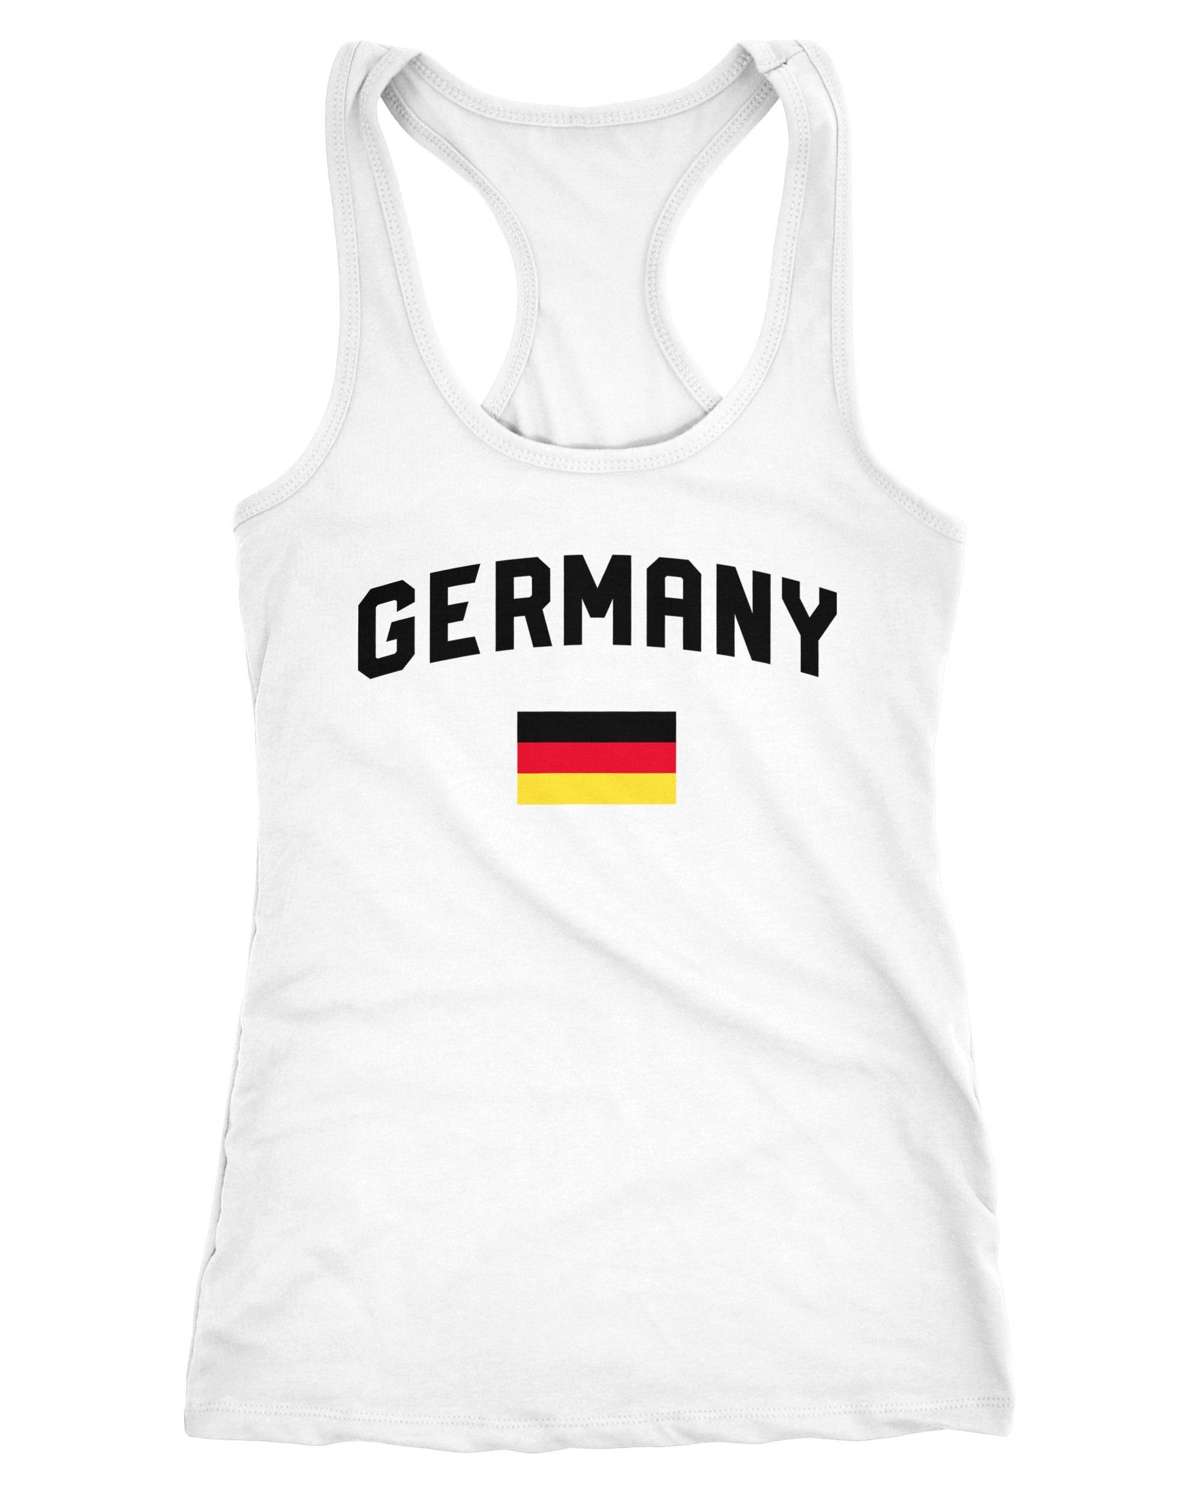 Майка женская, Германия, майка по футболу, футболка для болельщика чемпионата мира по футболу 2018, Германия ®